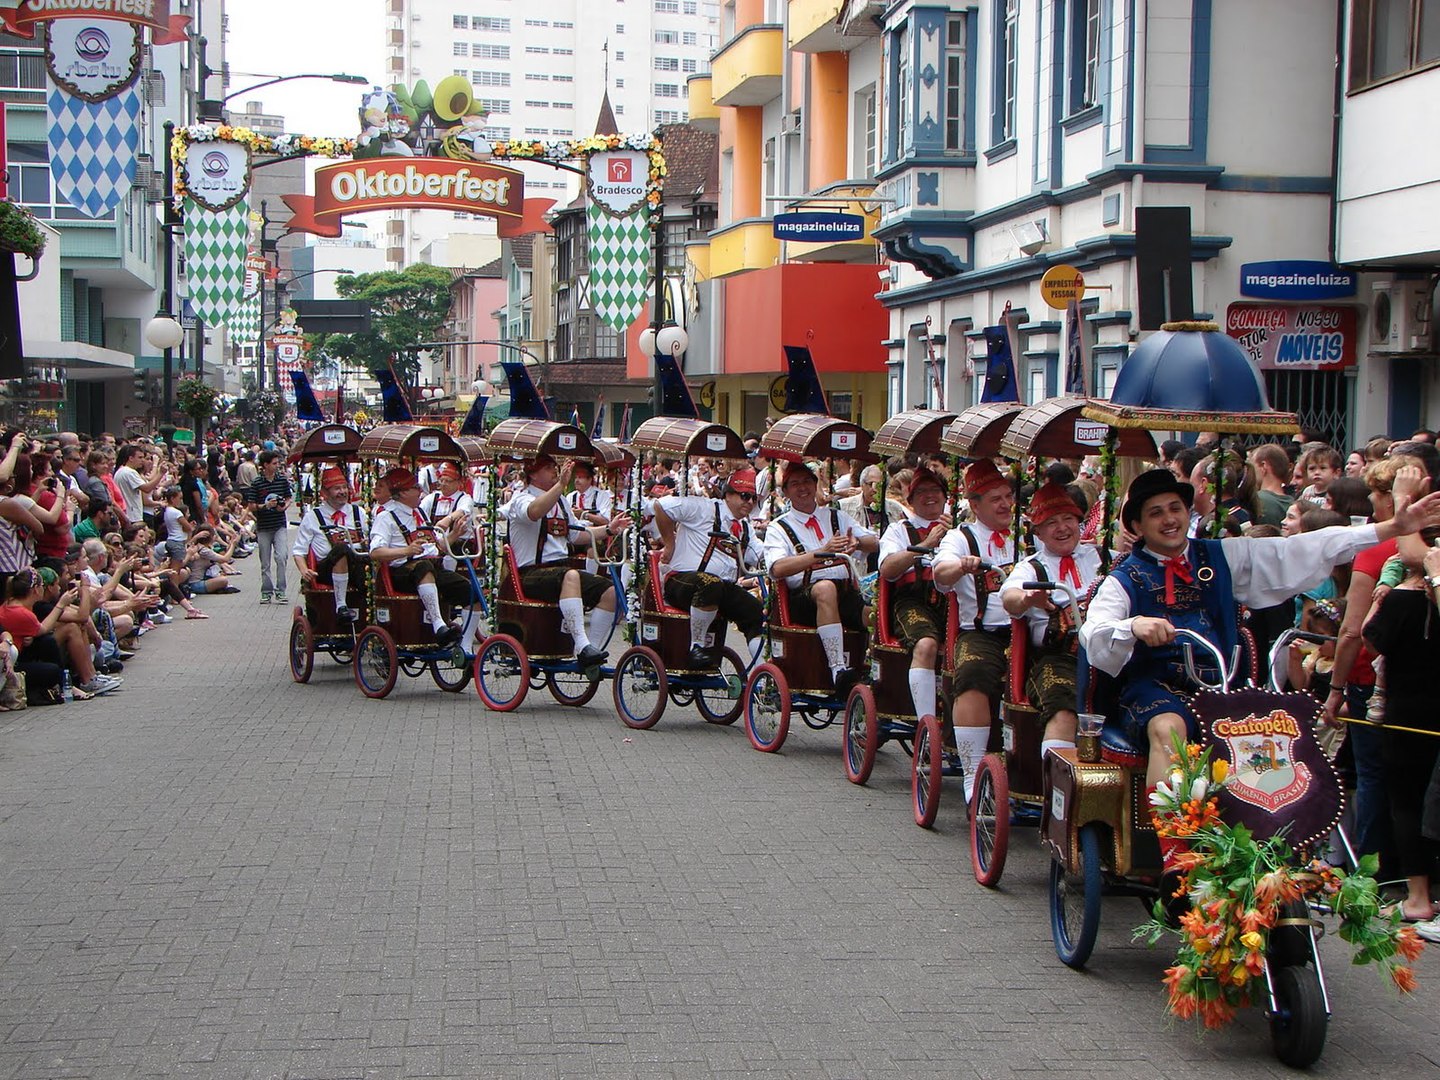 Cidade em Santa Catarina possui uma das maiores Oktoberfests fora da Alemanha (Fonte: Wikimedia Commons)